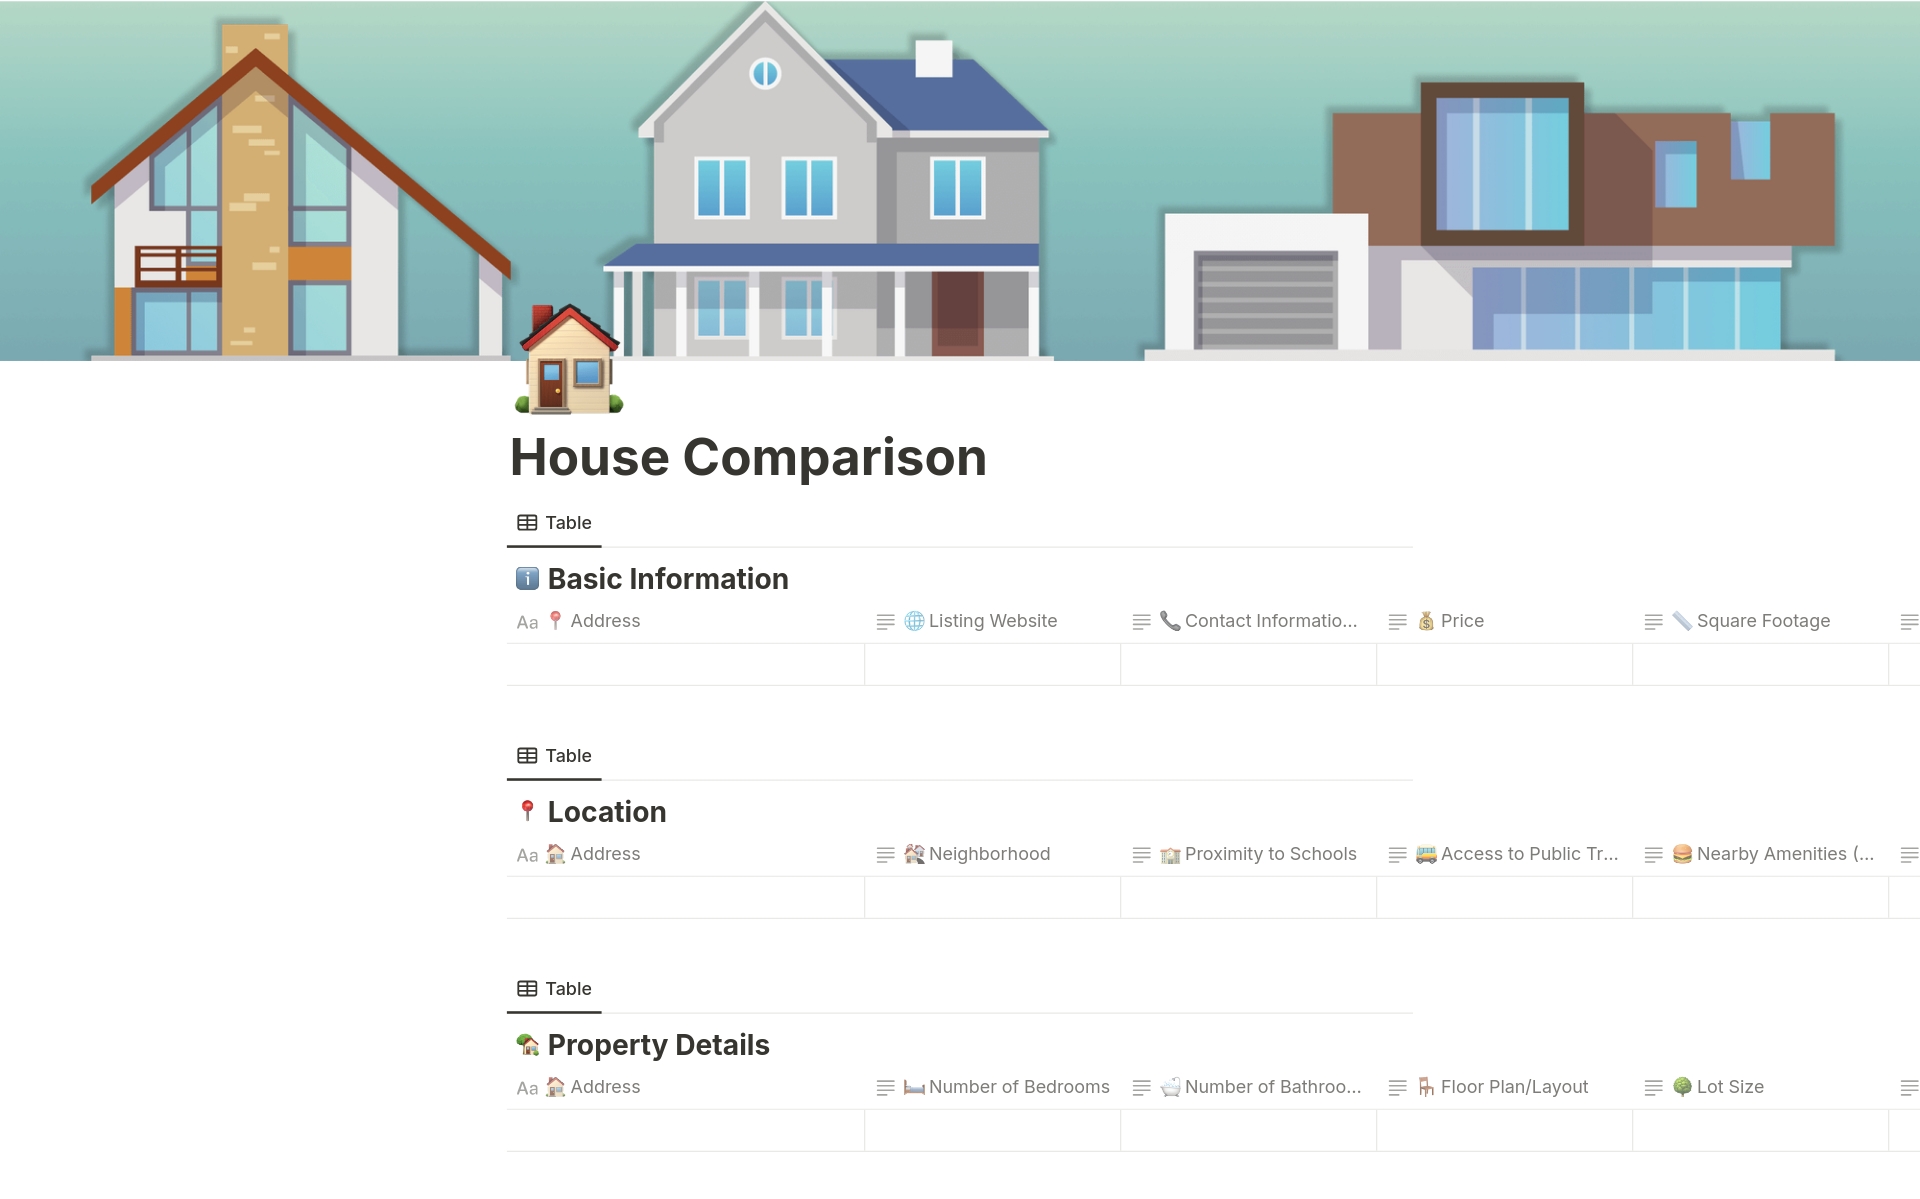 Aperçu du modèle de House Comparison